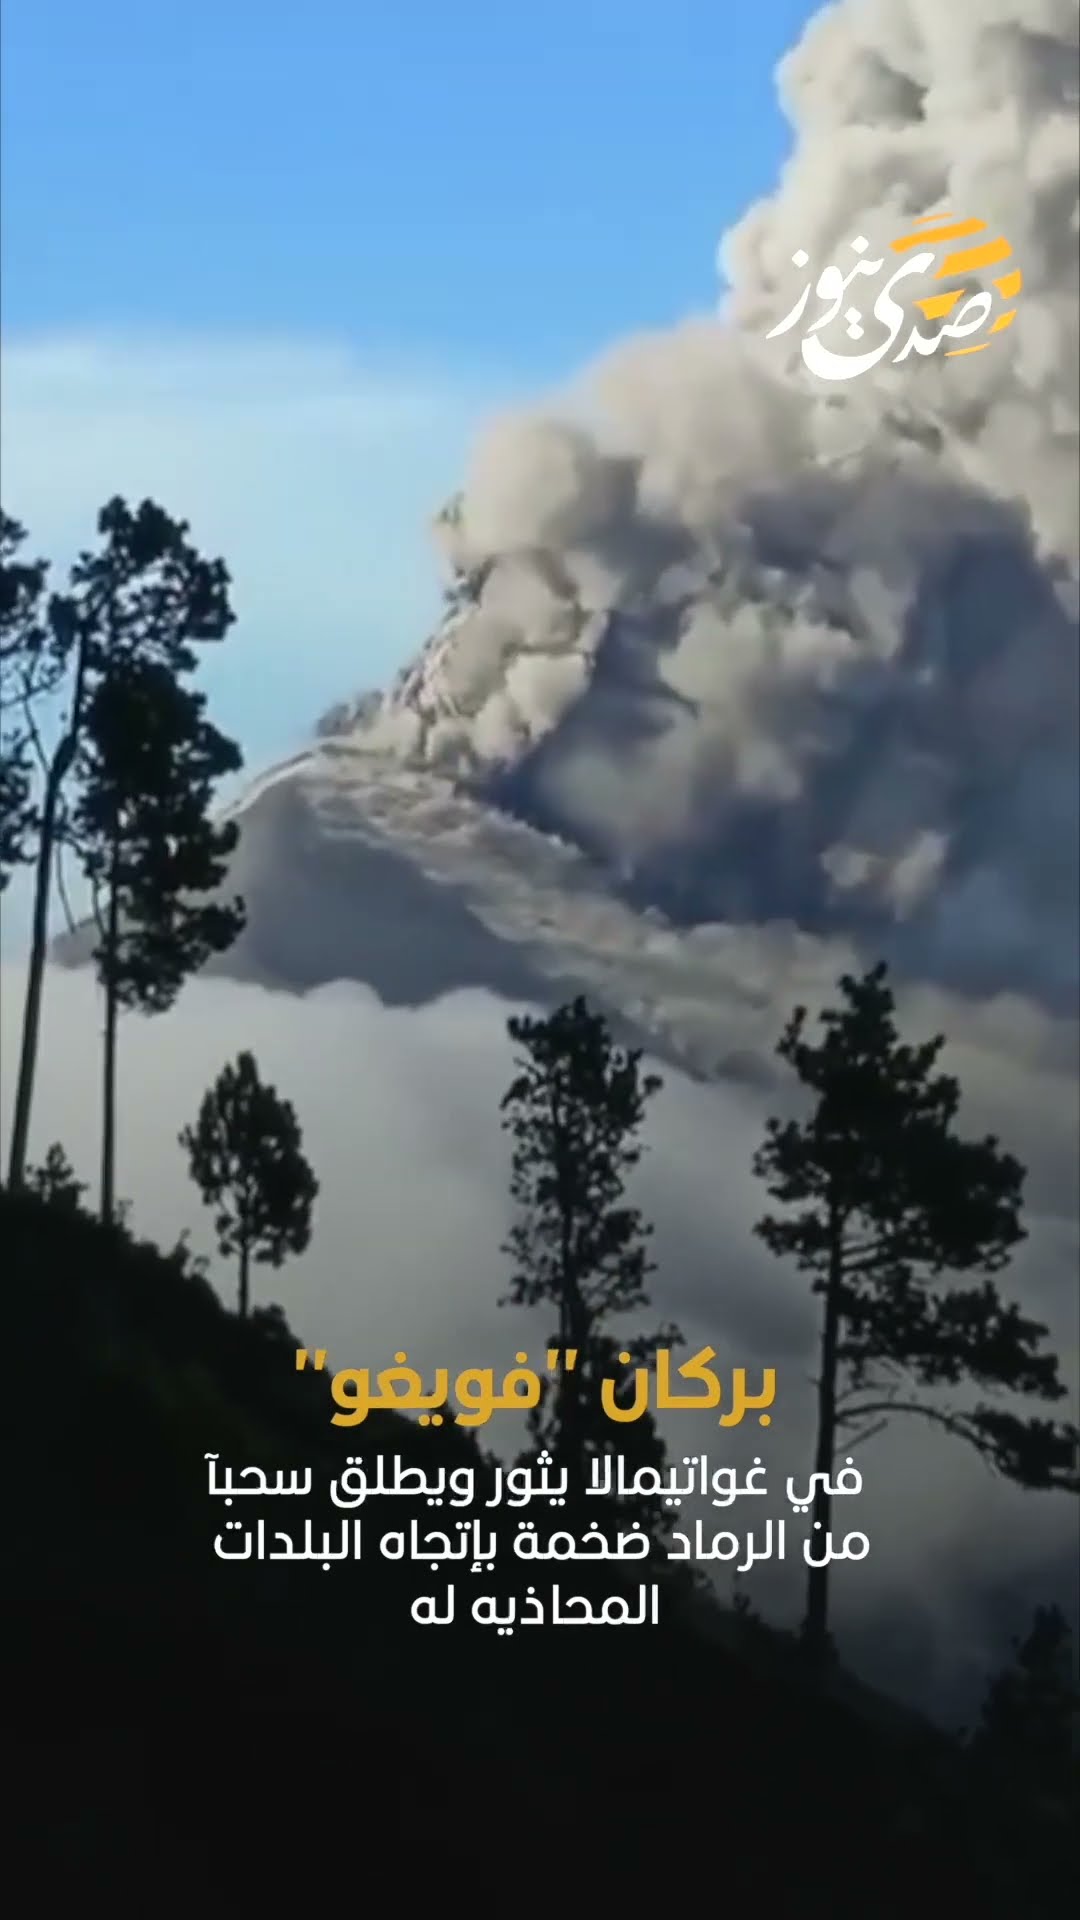 بركان "فويغو" في غواتيمالا يثور ويطلق سحبآ من الرماد ضخمة بإتجاه البلدات المحاذيه له